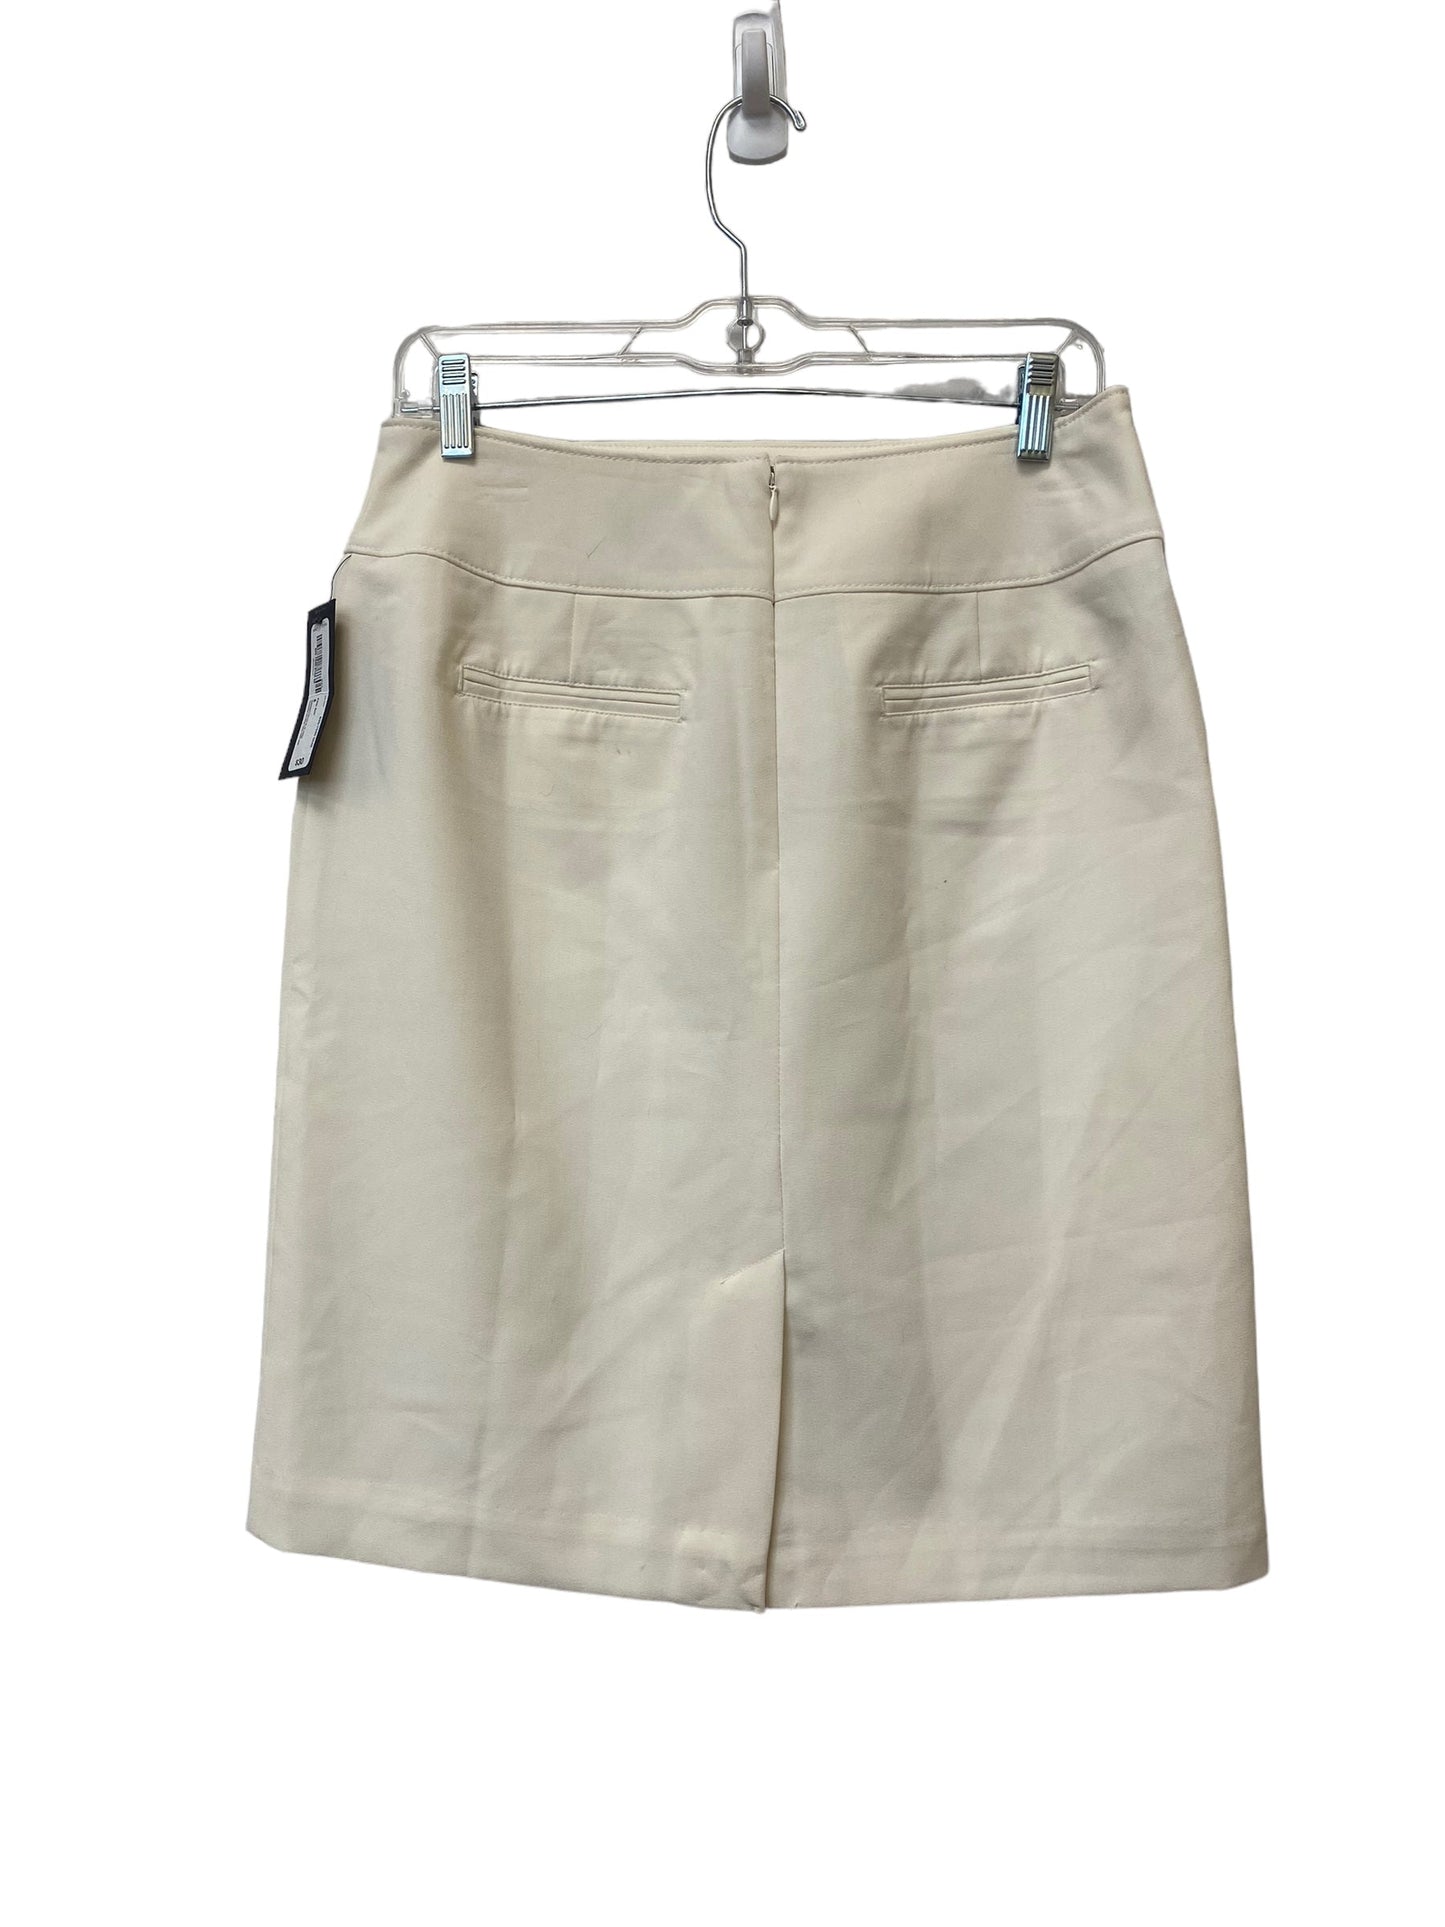 Skirt Mini & Short By Worthington  Size: 8